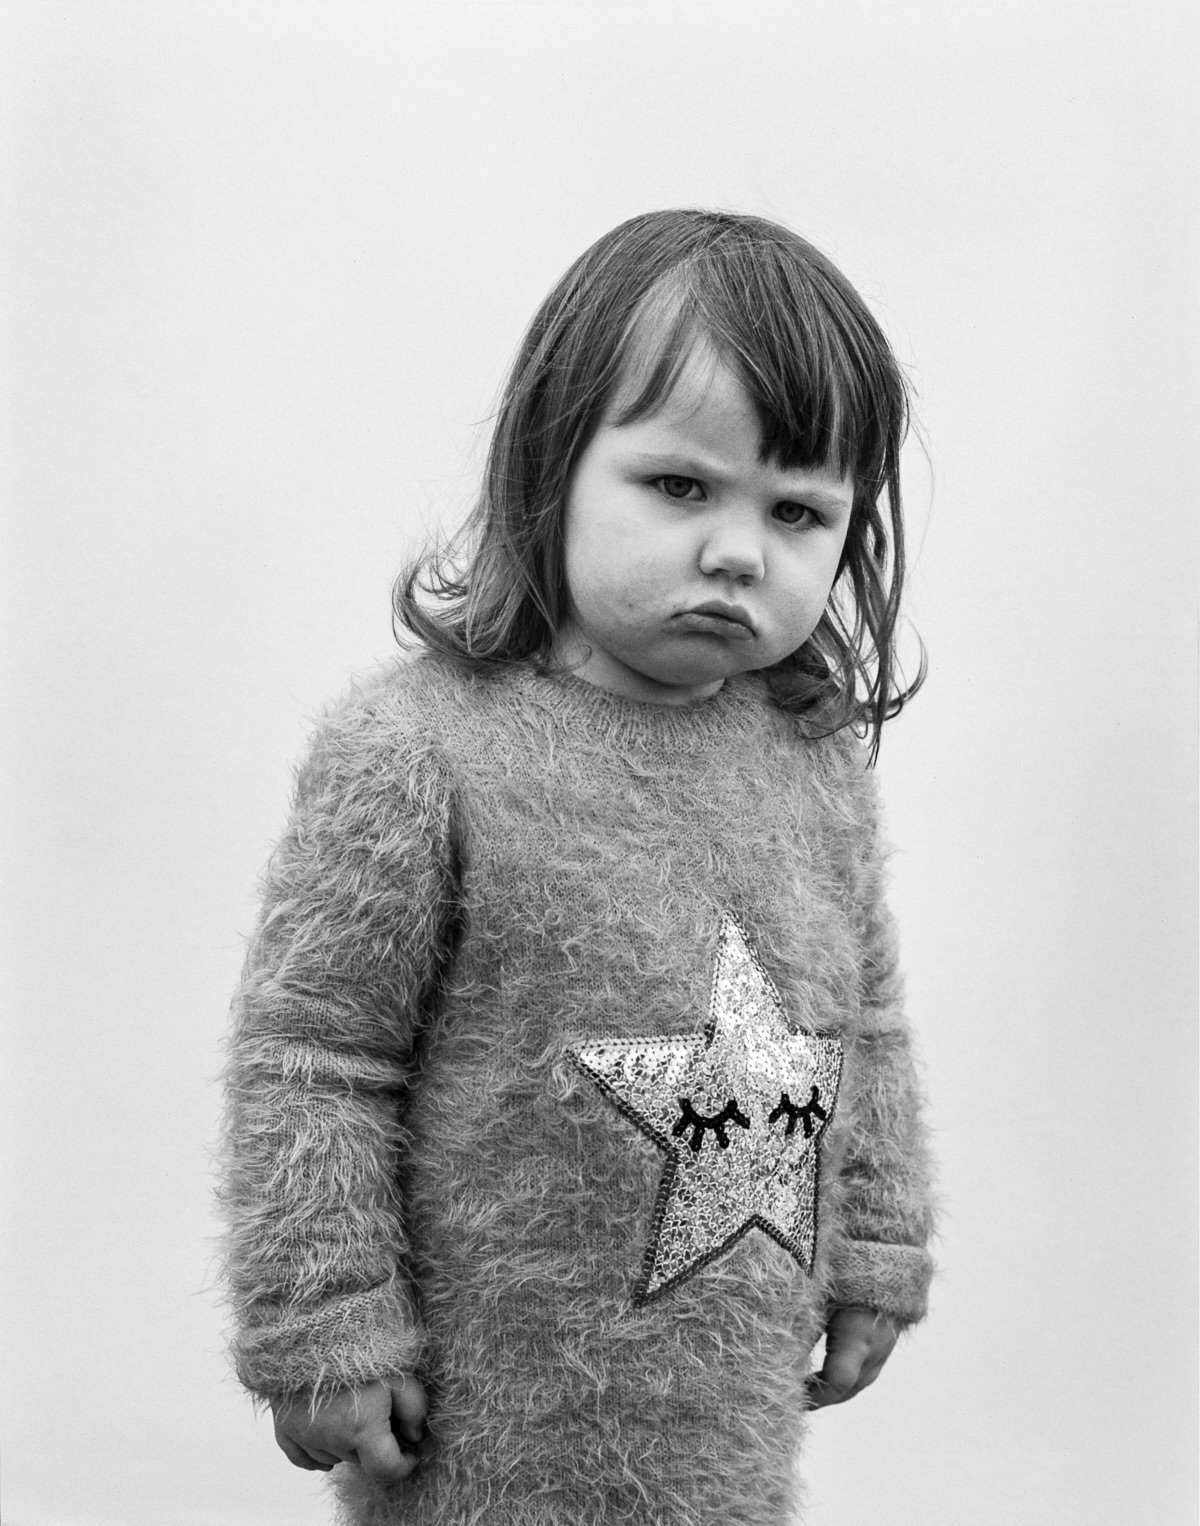 Julia Bostock, Grumpy Girl, Isle of Lewis, 2018